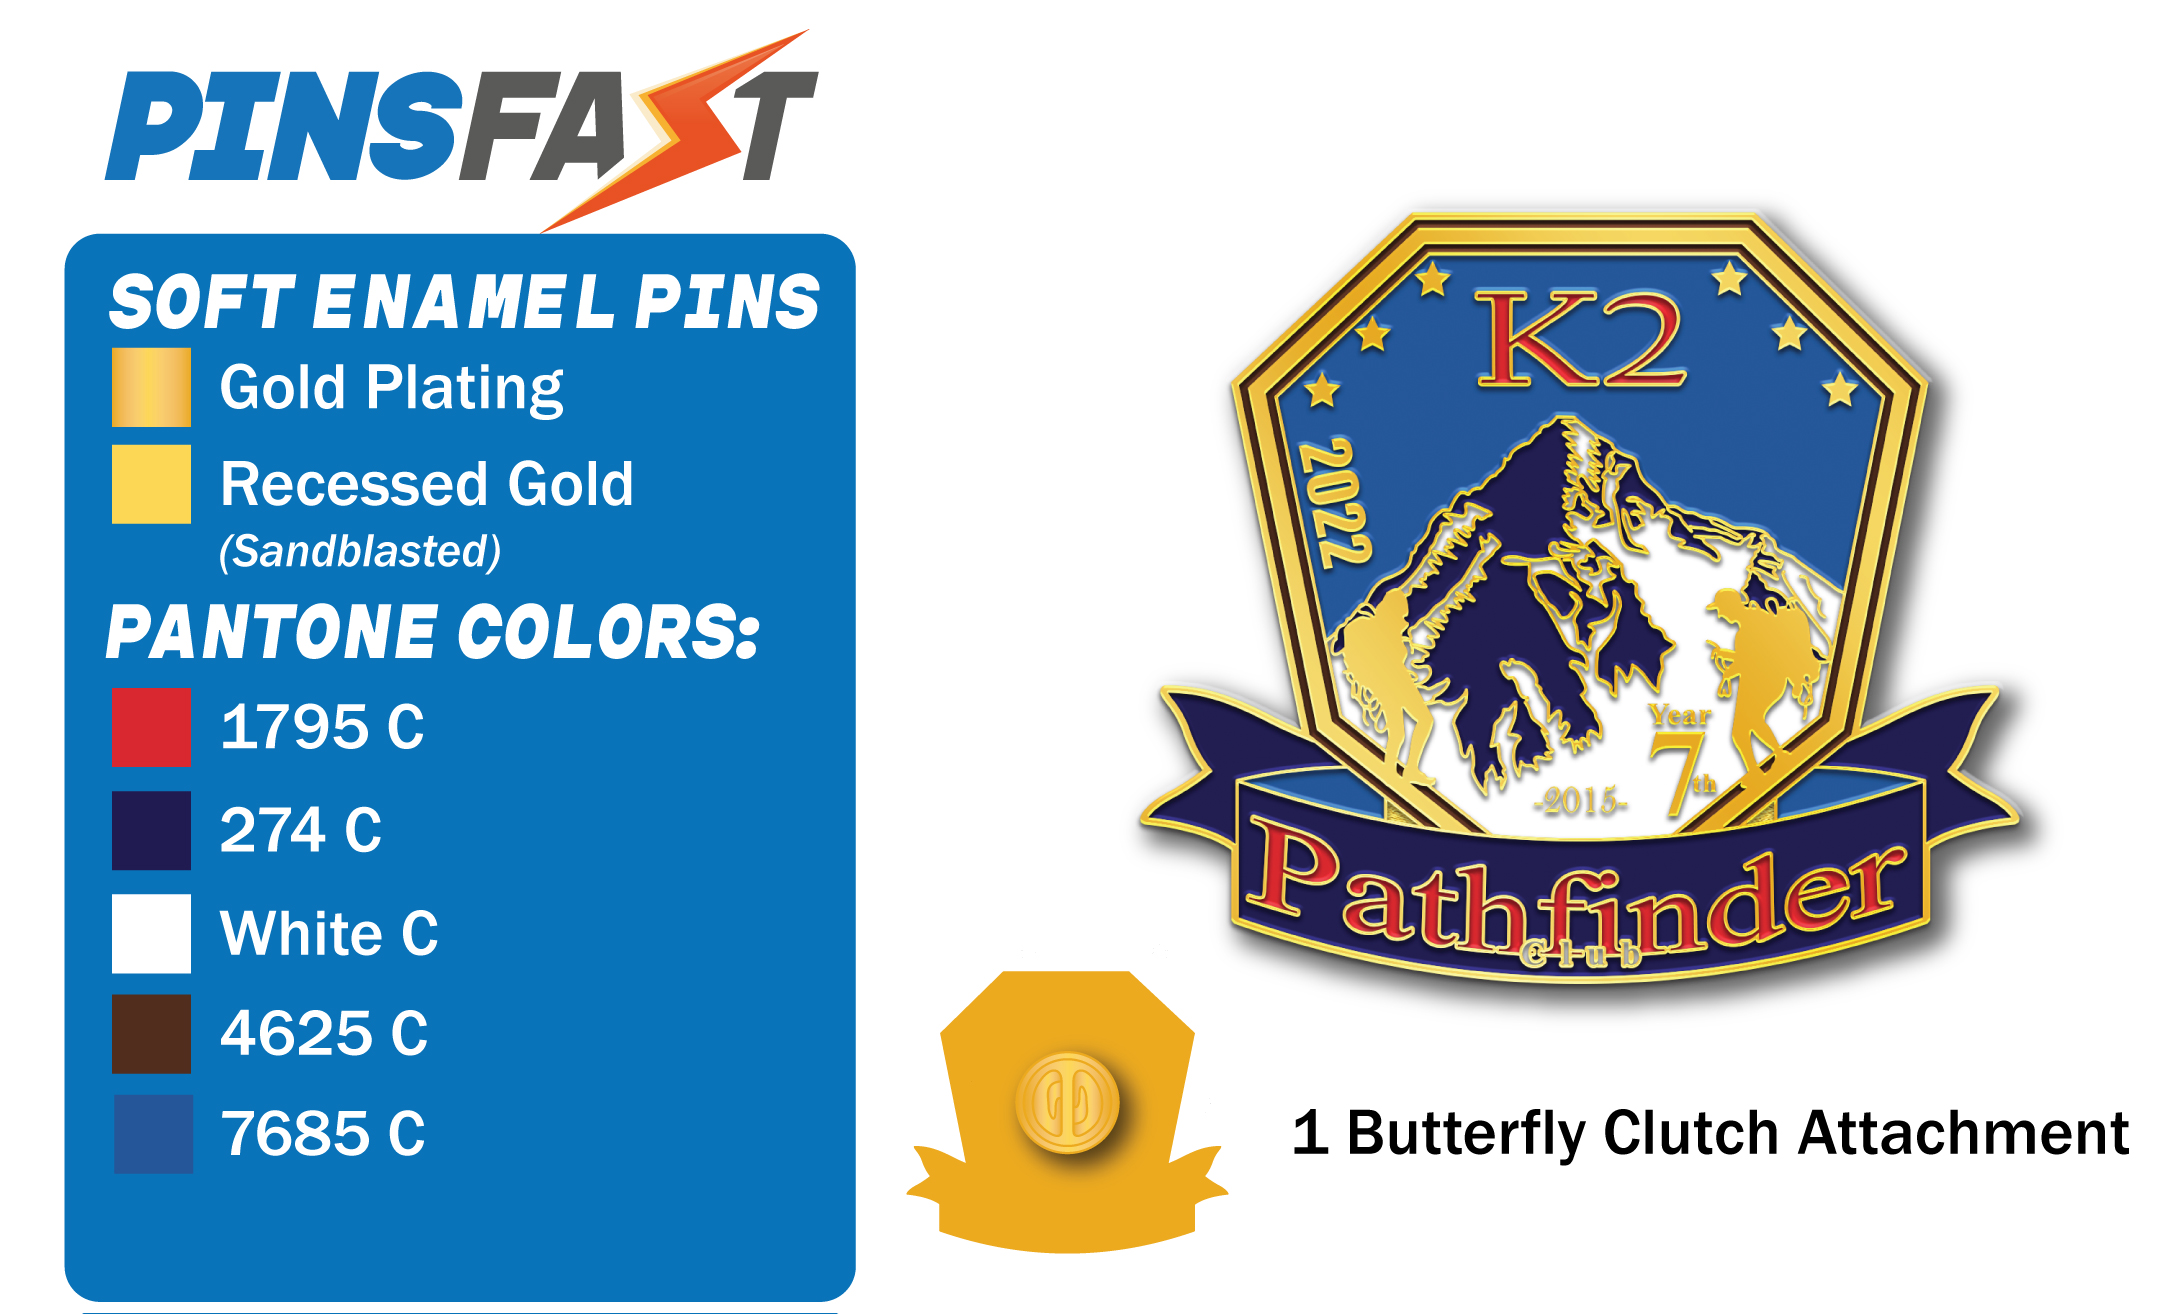 Pathfinder K2 Pins 3